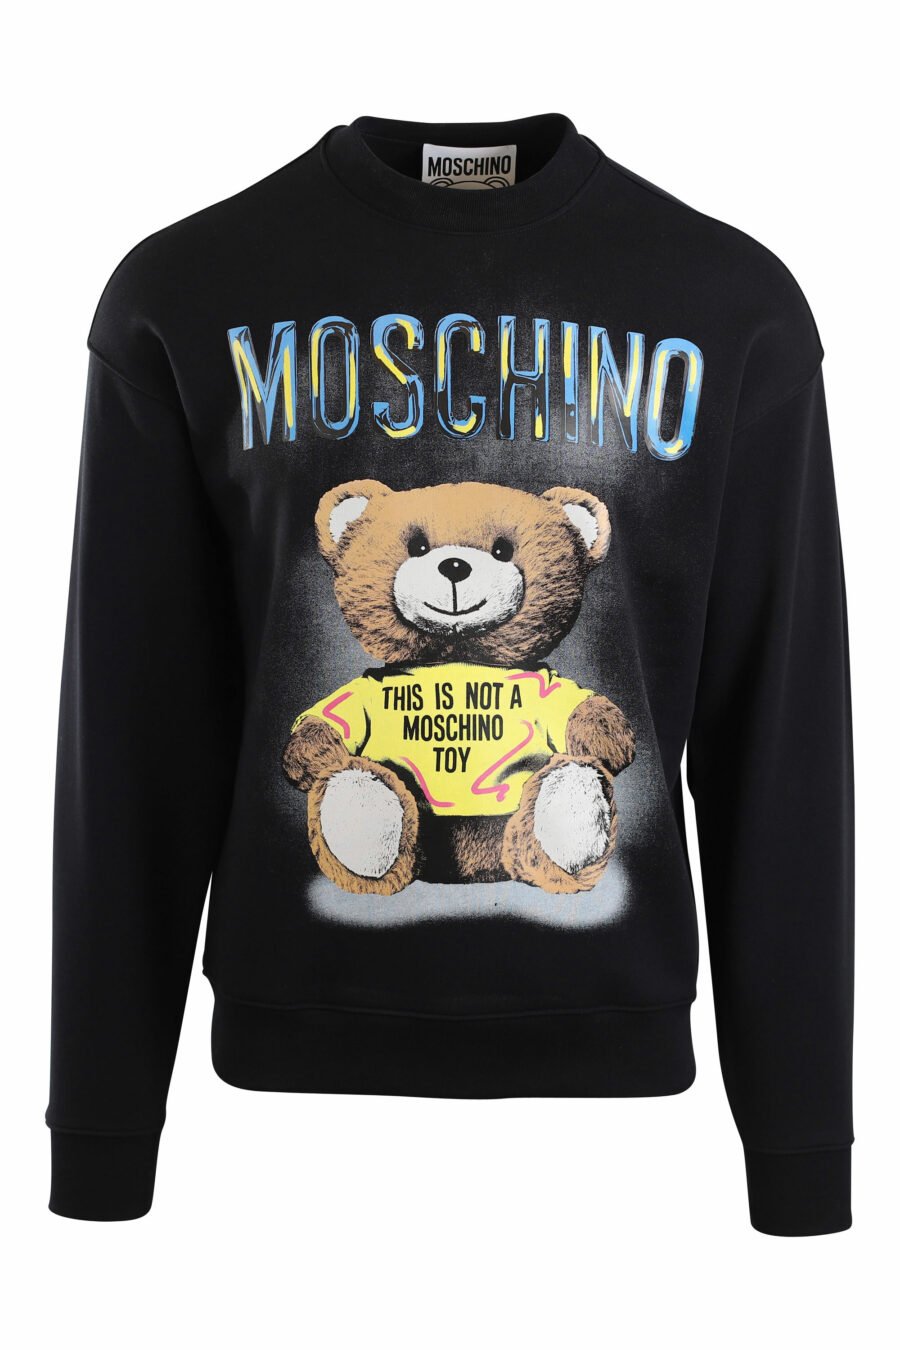 Schwarzes Sweatshirt mit Maxilogo-Bär "Dies ist kein Moschino-Spielzeug" - IMG 2140